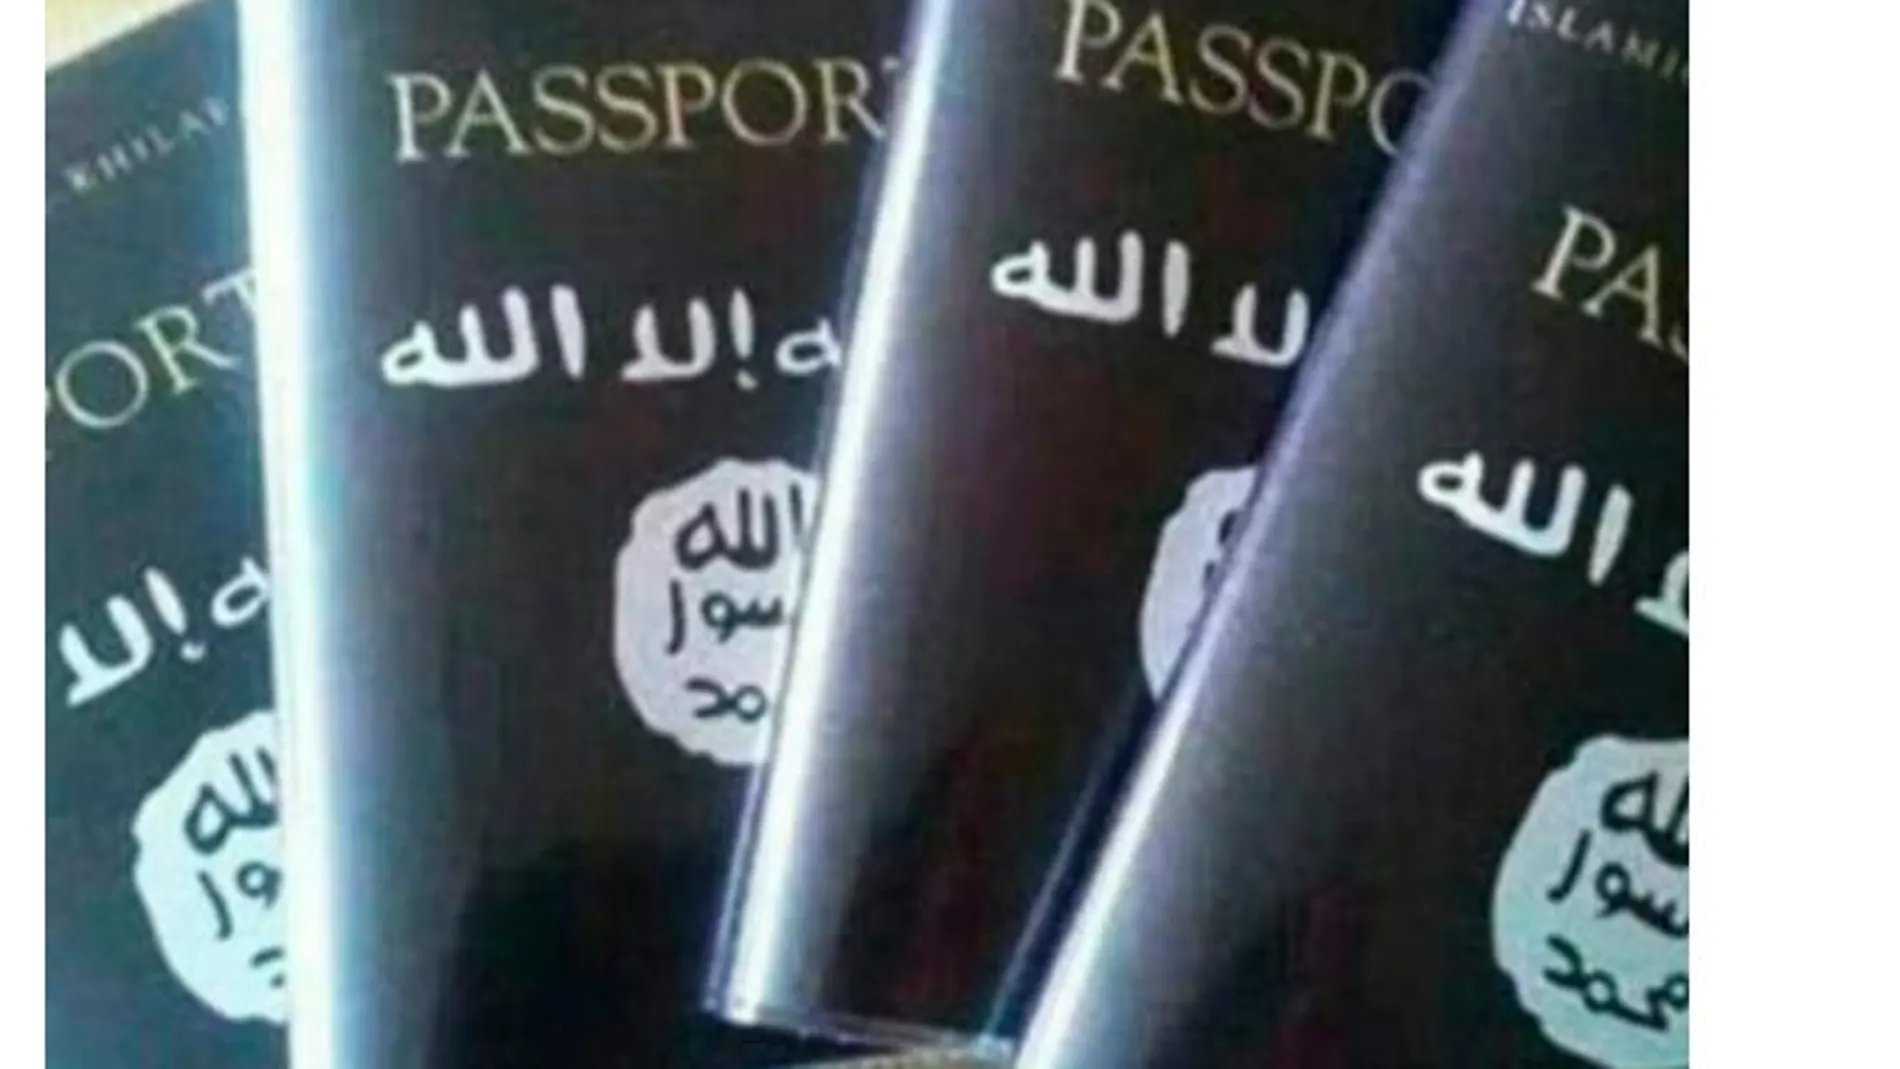 Los yihadistas preparan sus “pasaportes” que usarán una vez lograda la “victoria”